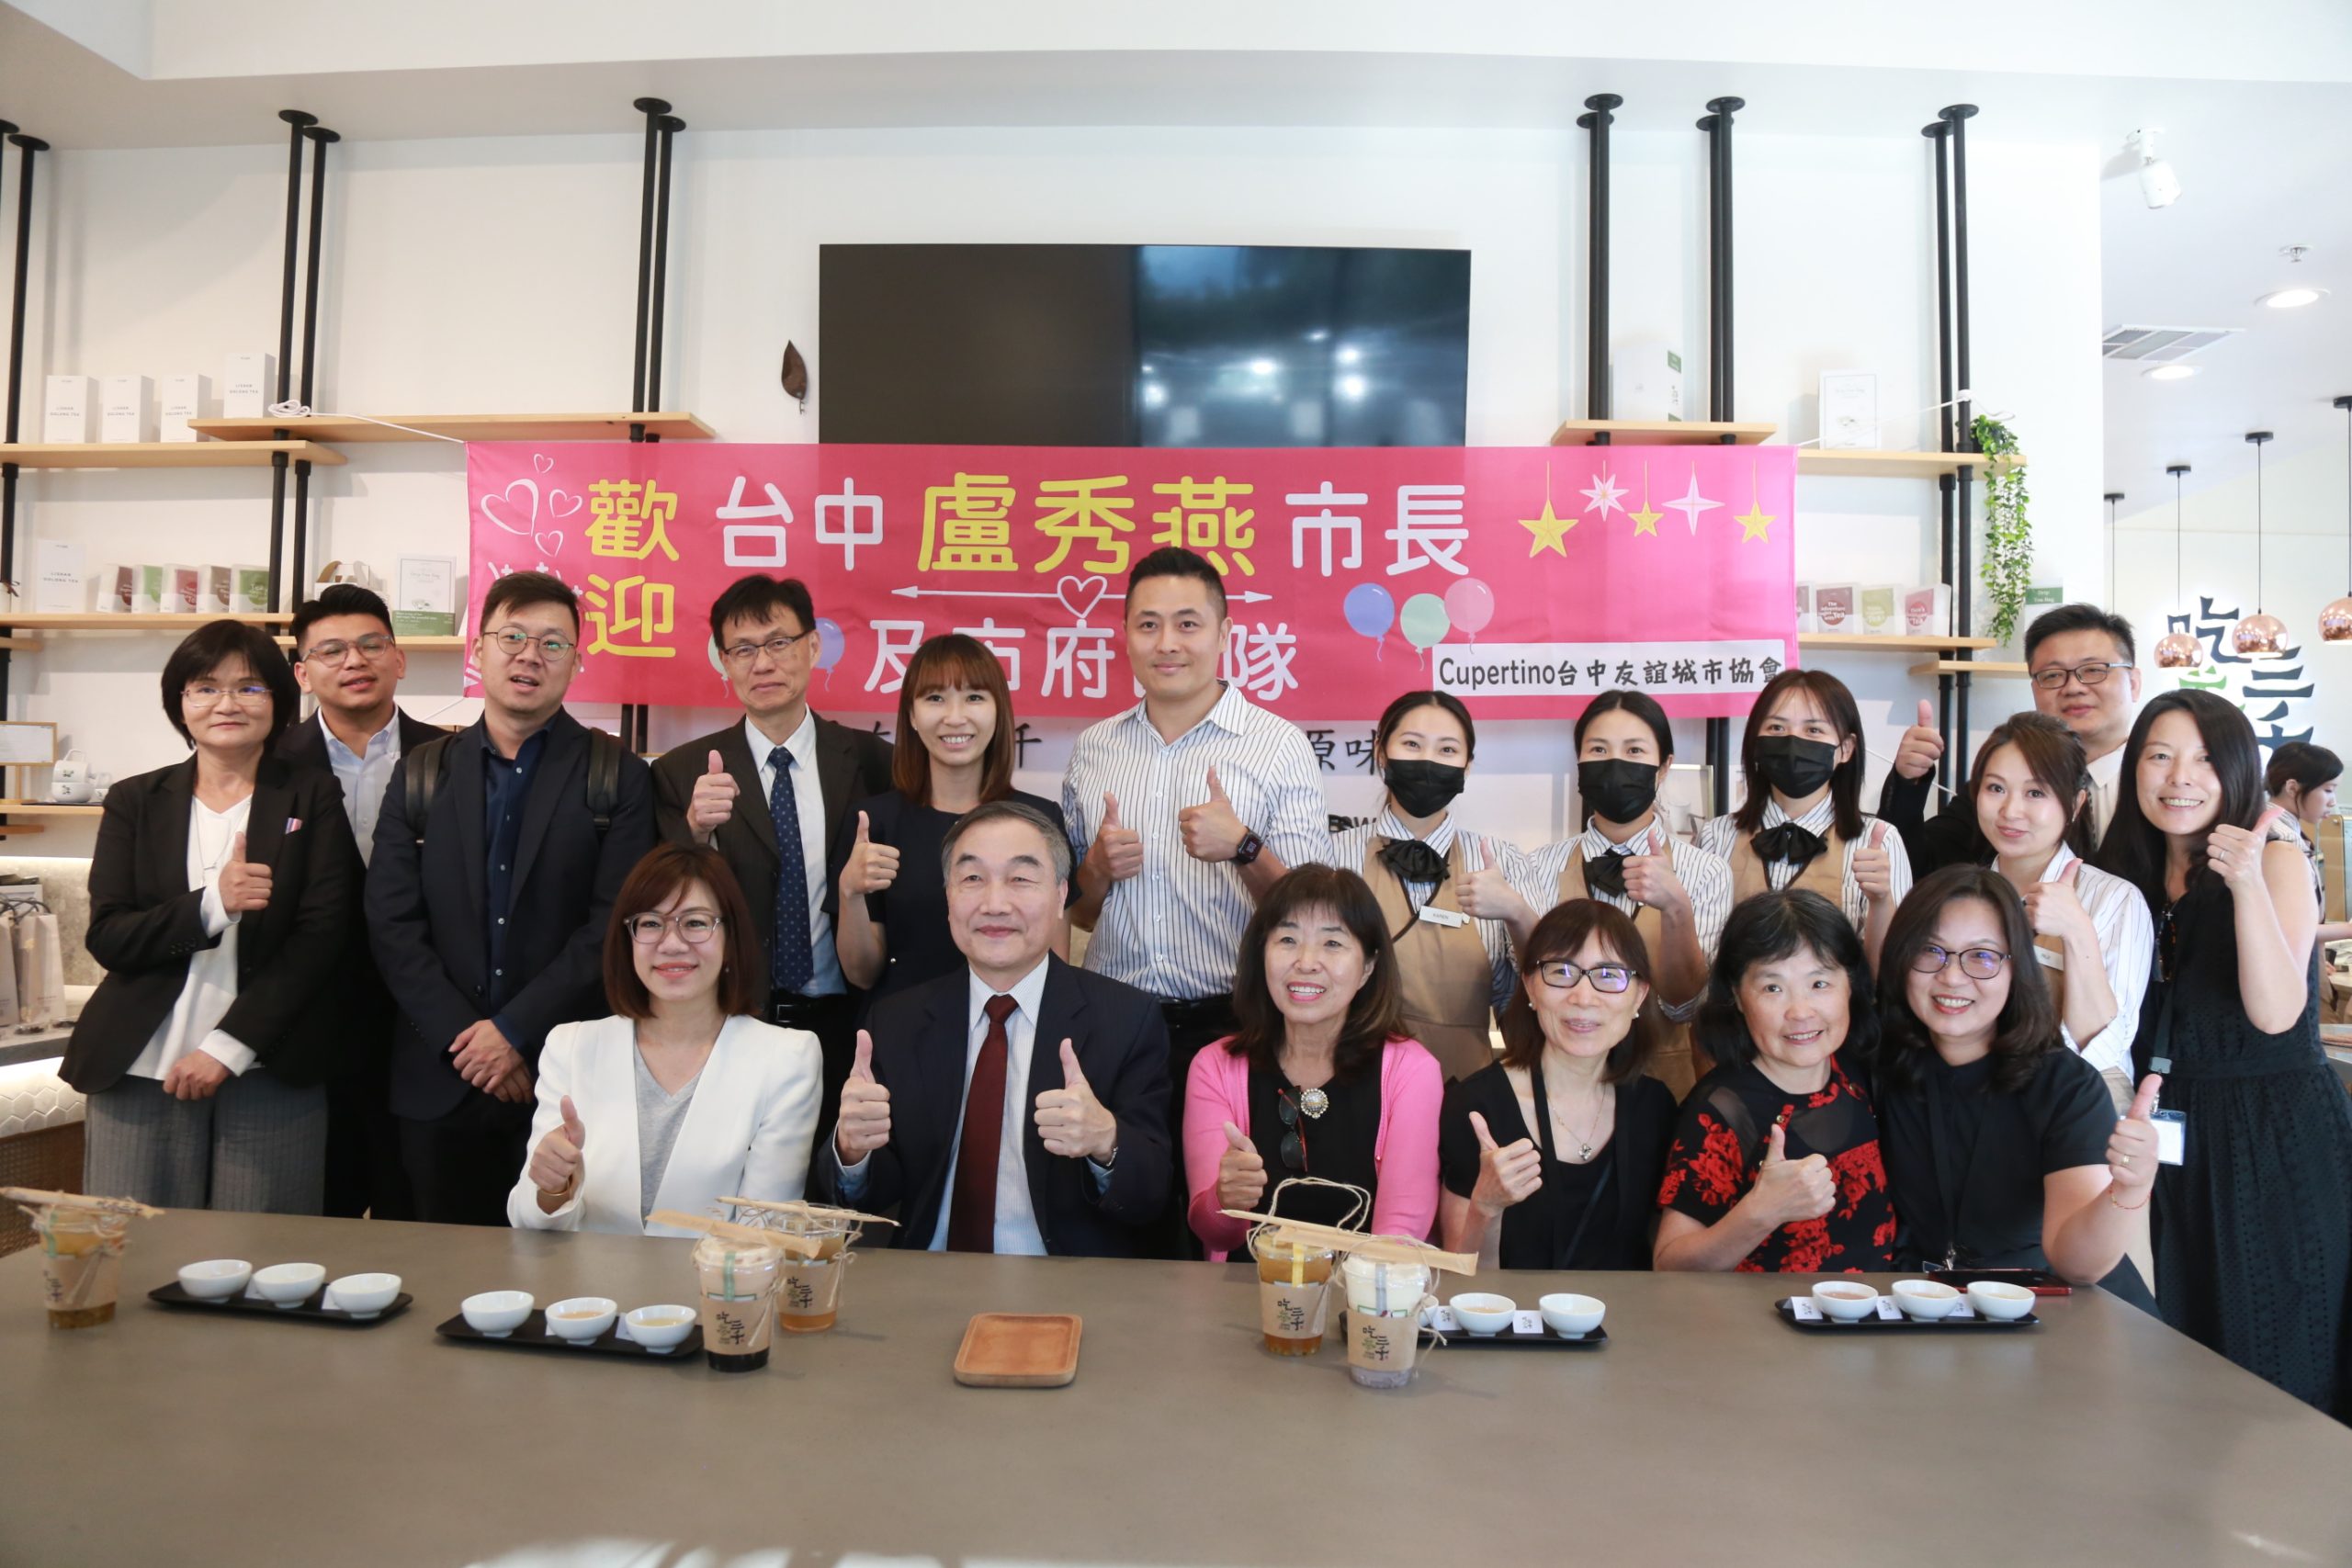 臺灣副市長率團參訪硅谷友好市庫柏蒂諾